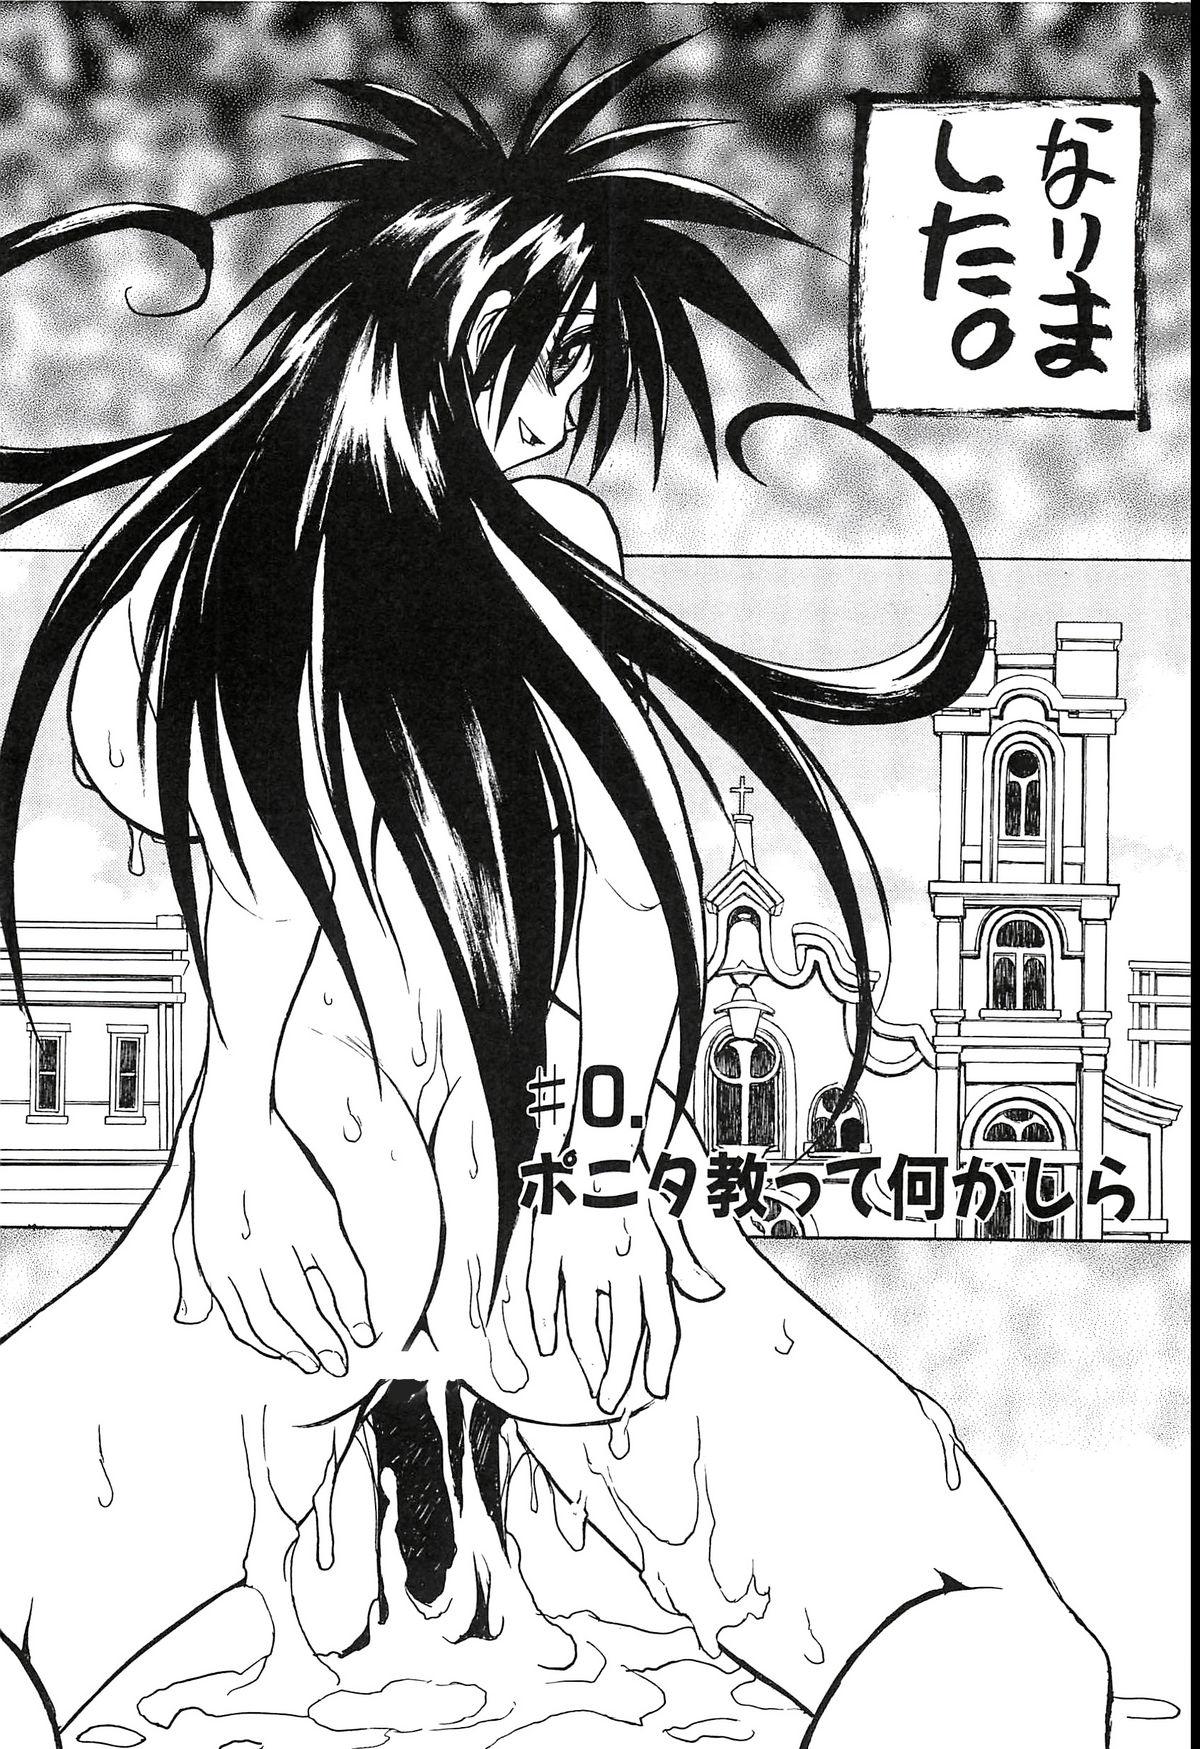 Hair Pony Tale Fukkokuban Shesafreak - Page 6